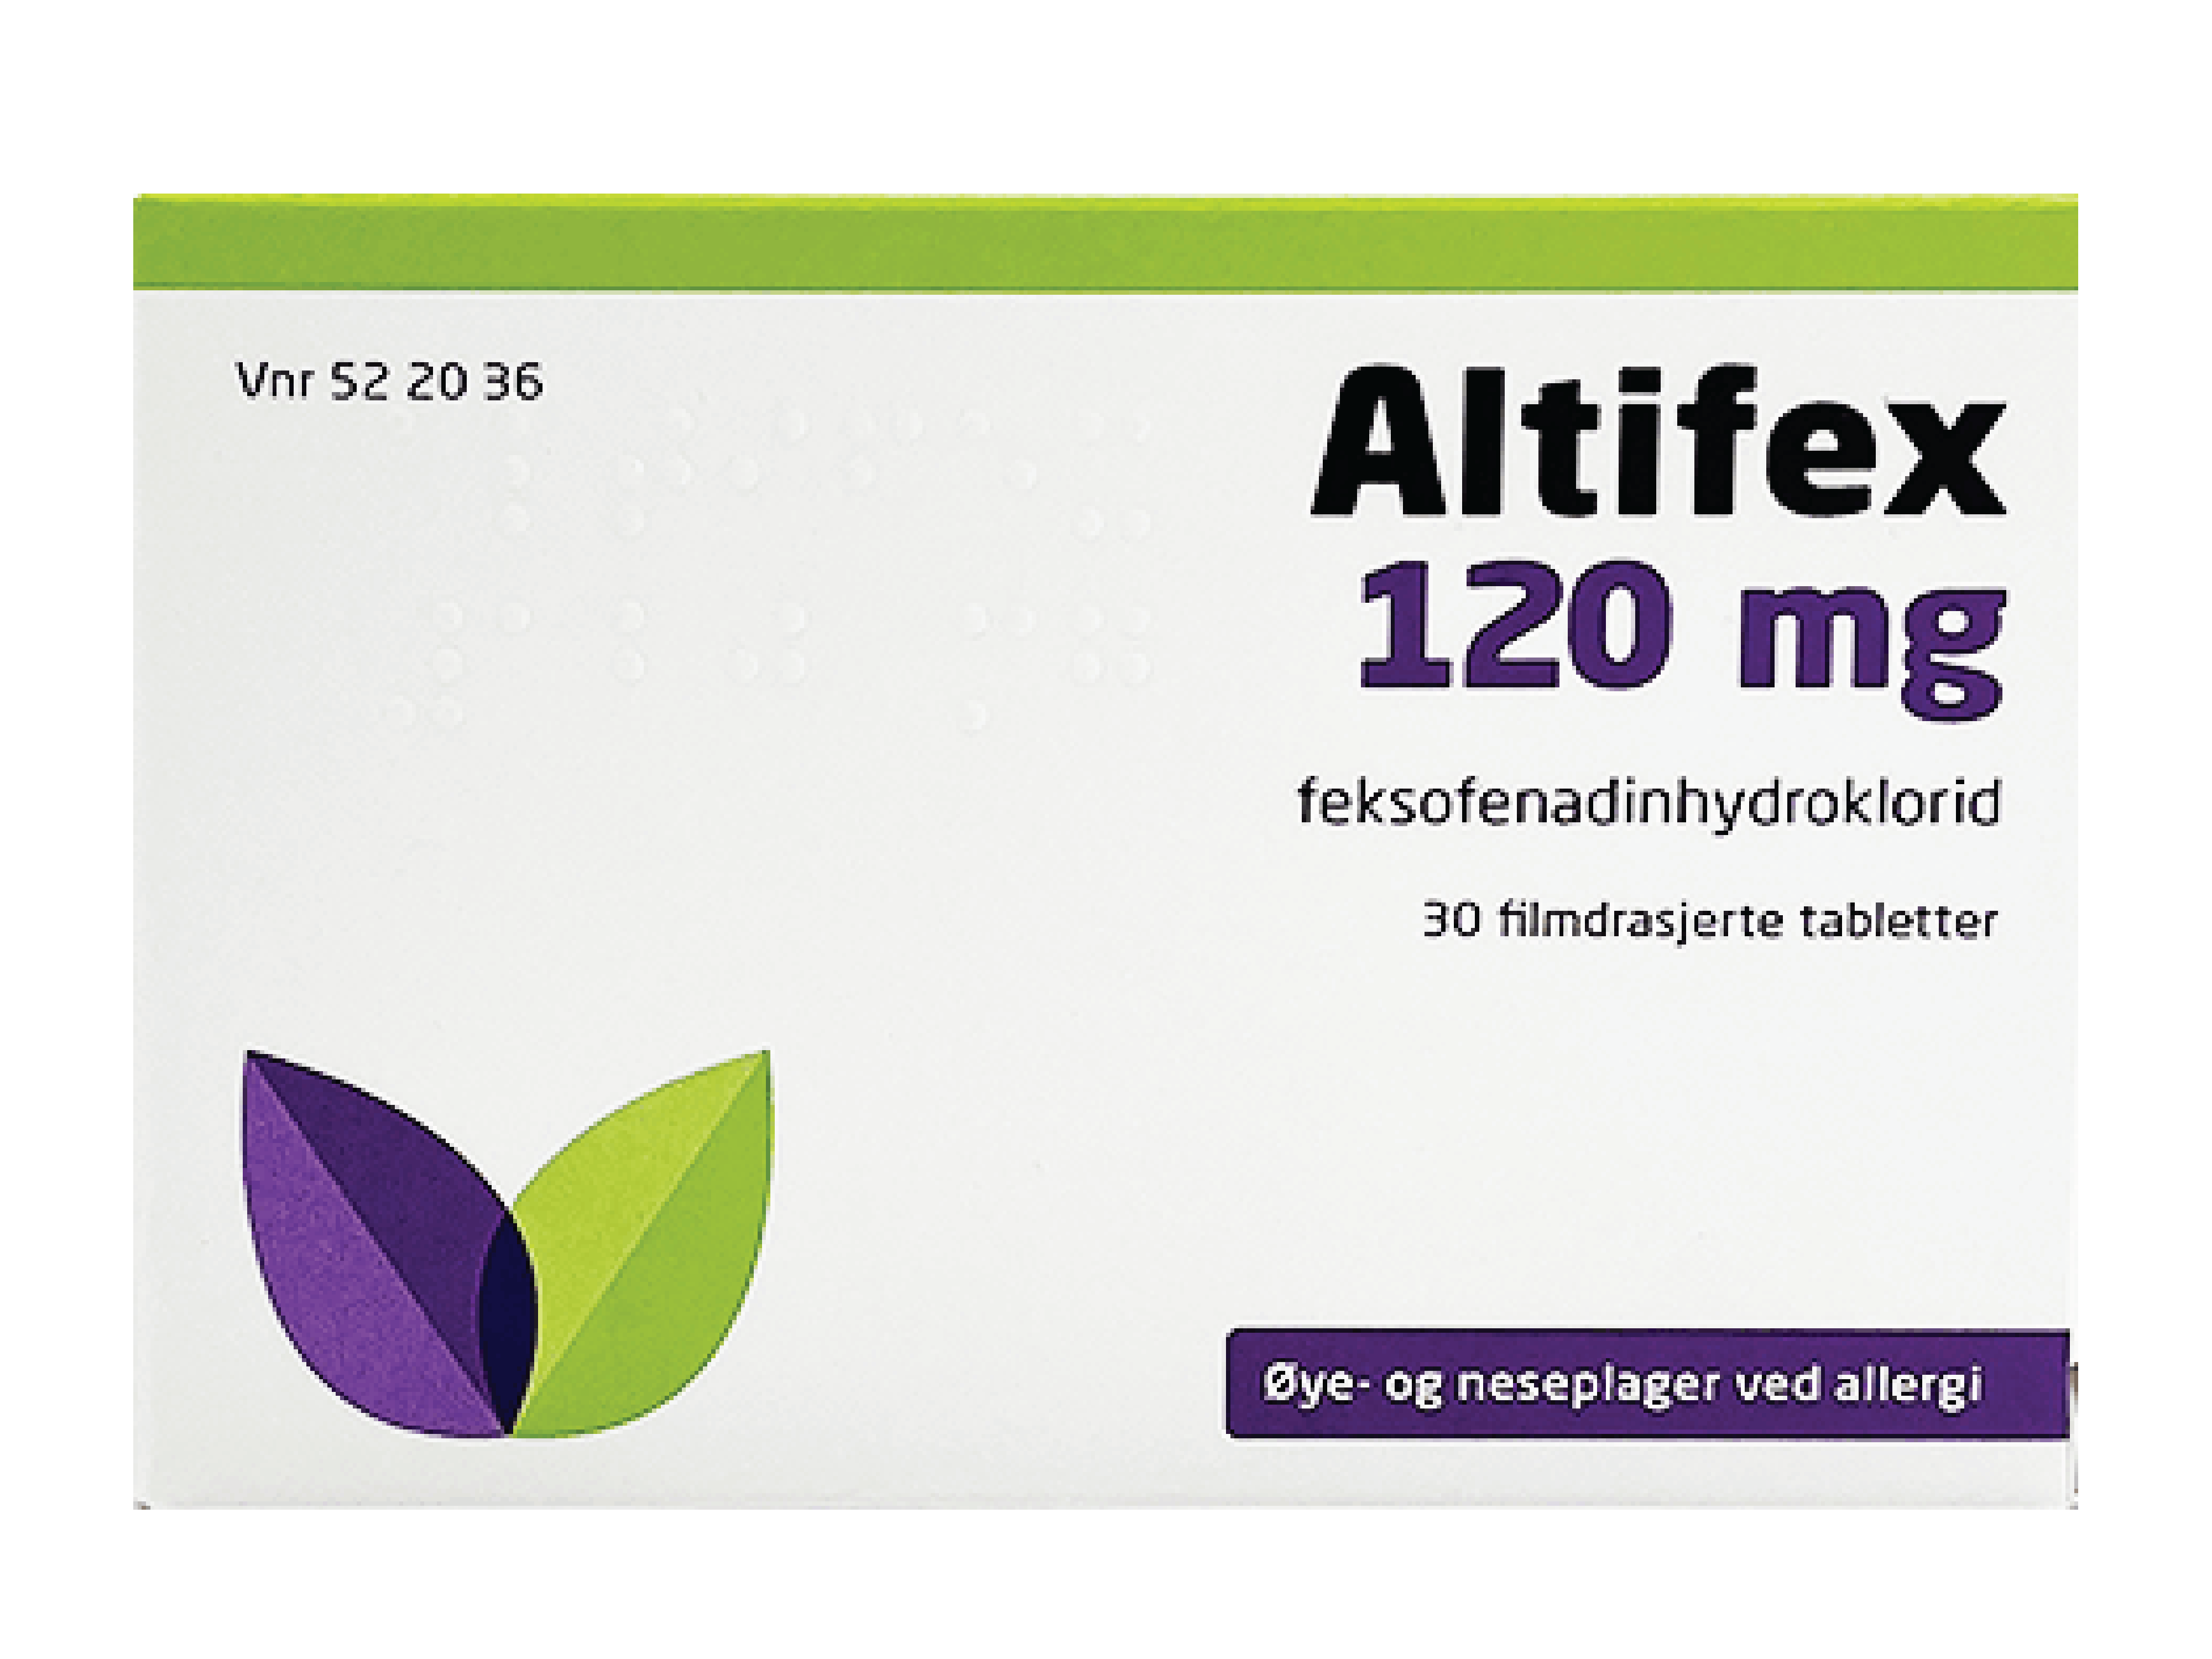 Altifex 120 mg tabletter, 30 stk.